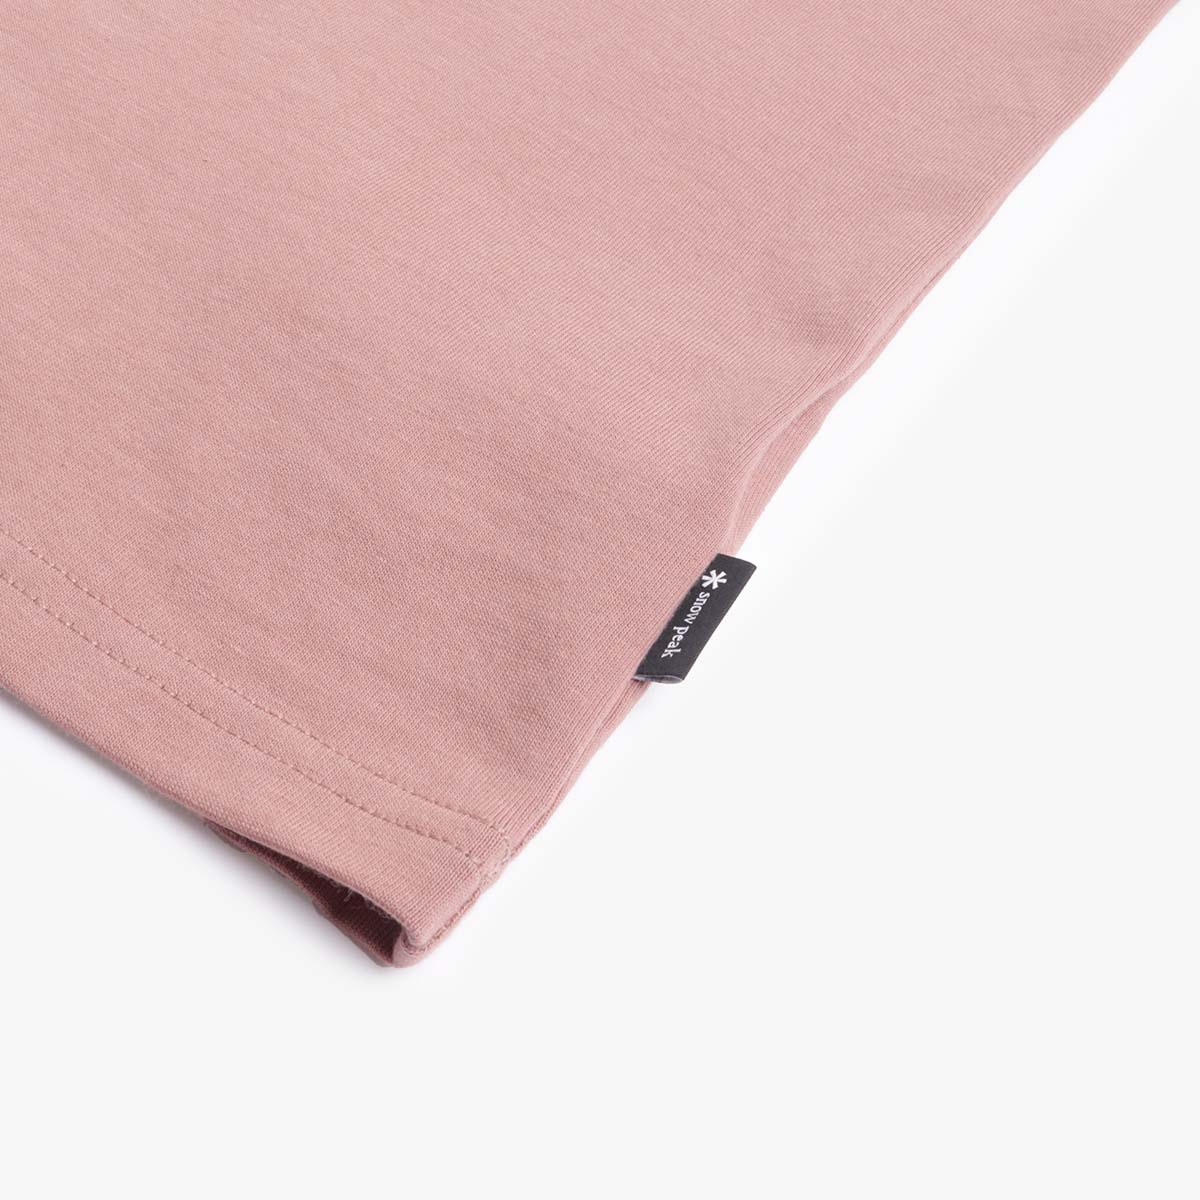 Snow Peak Refective Printed T-Shirt, Pink, Detail Shot 3